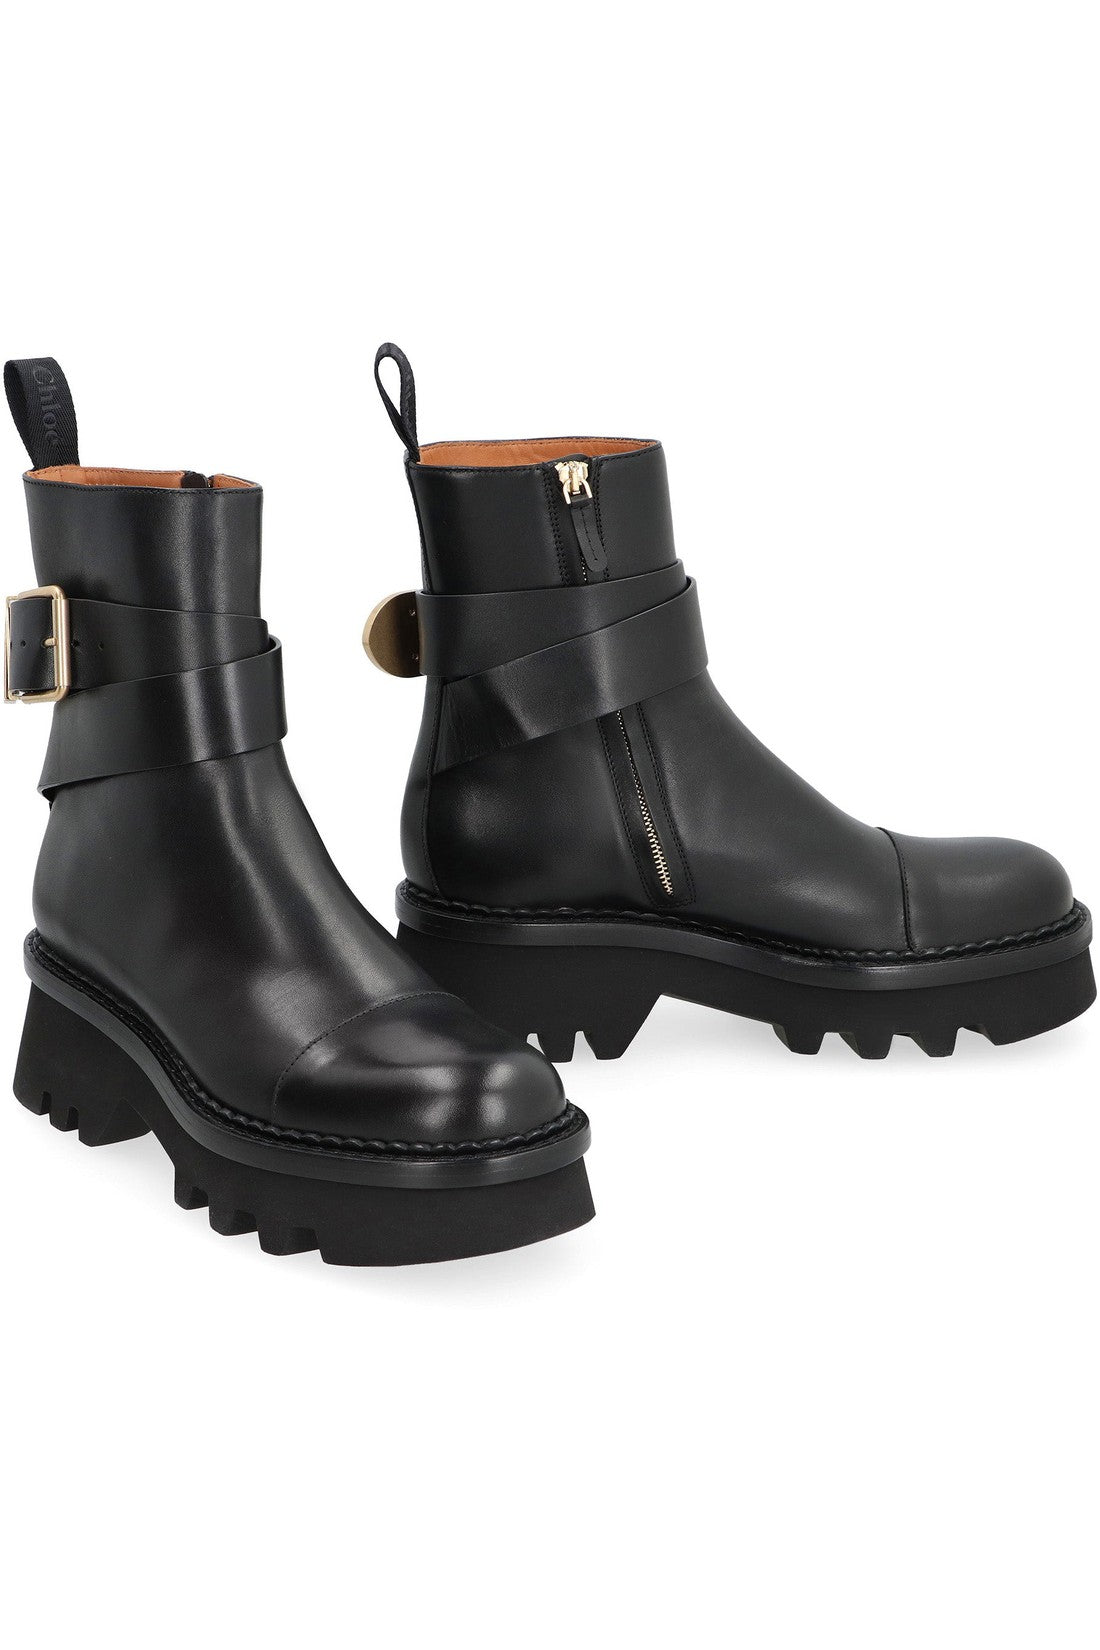 Chloé-OUTLET-SALE-Owena leather ankle boots-ARCHIVIST